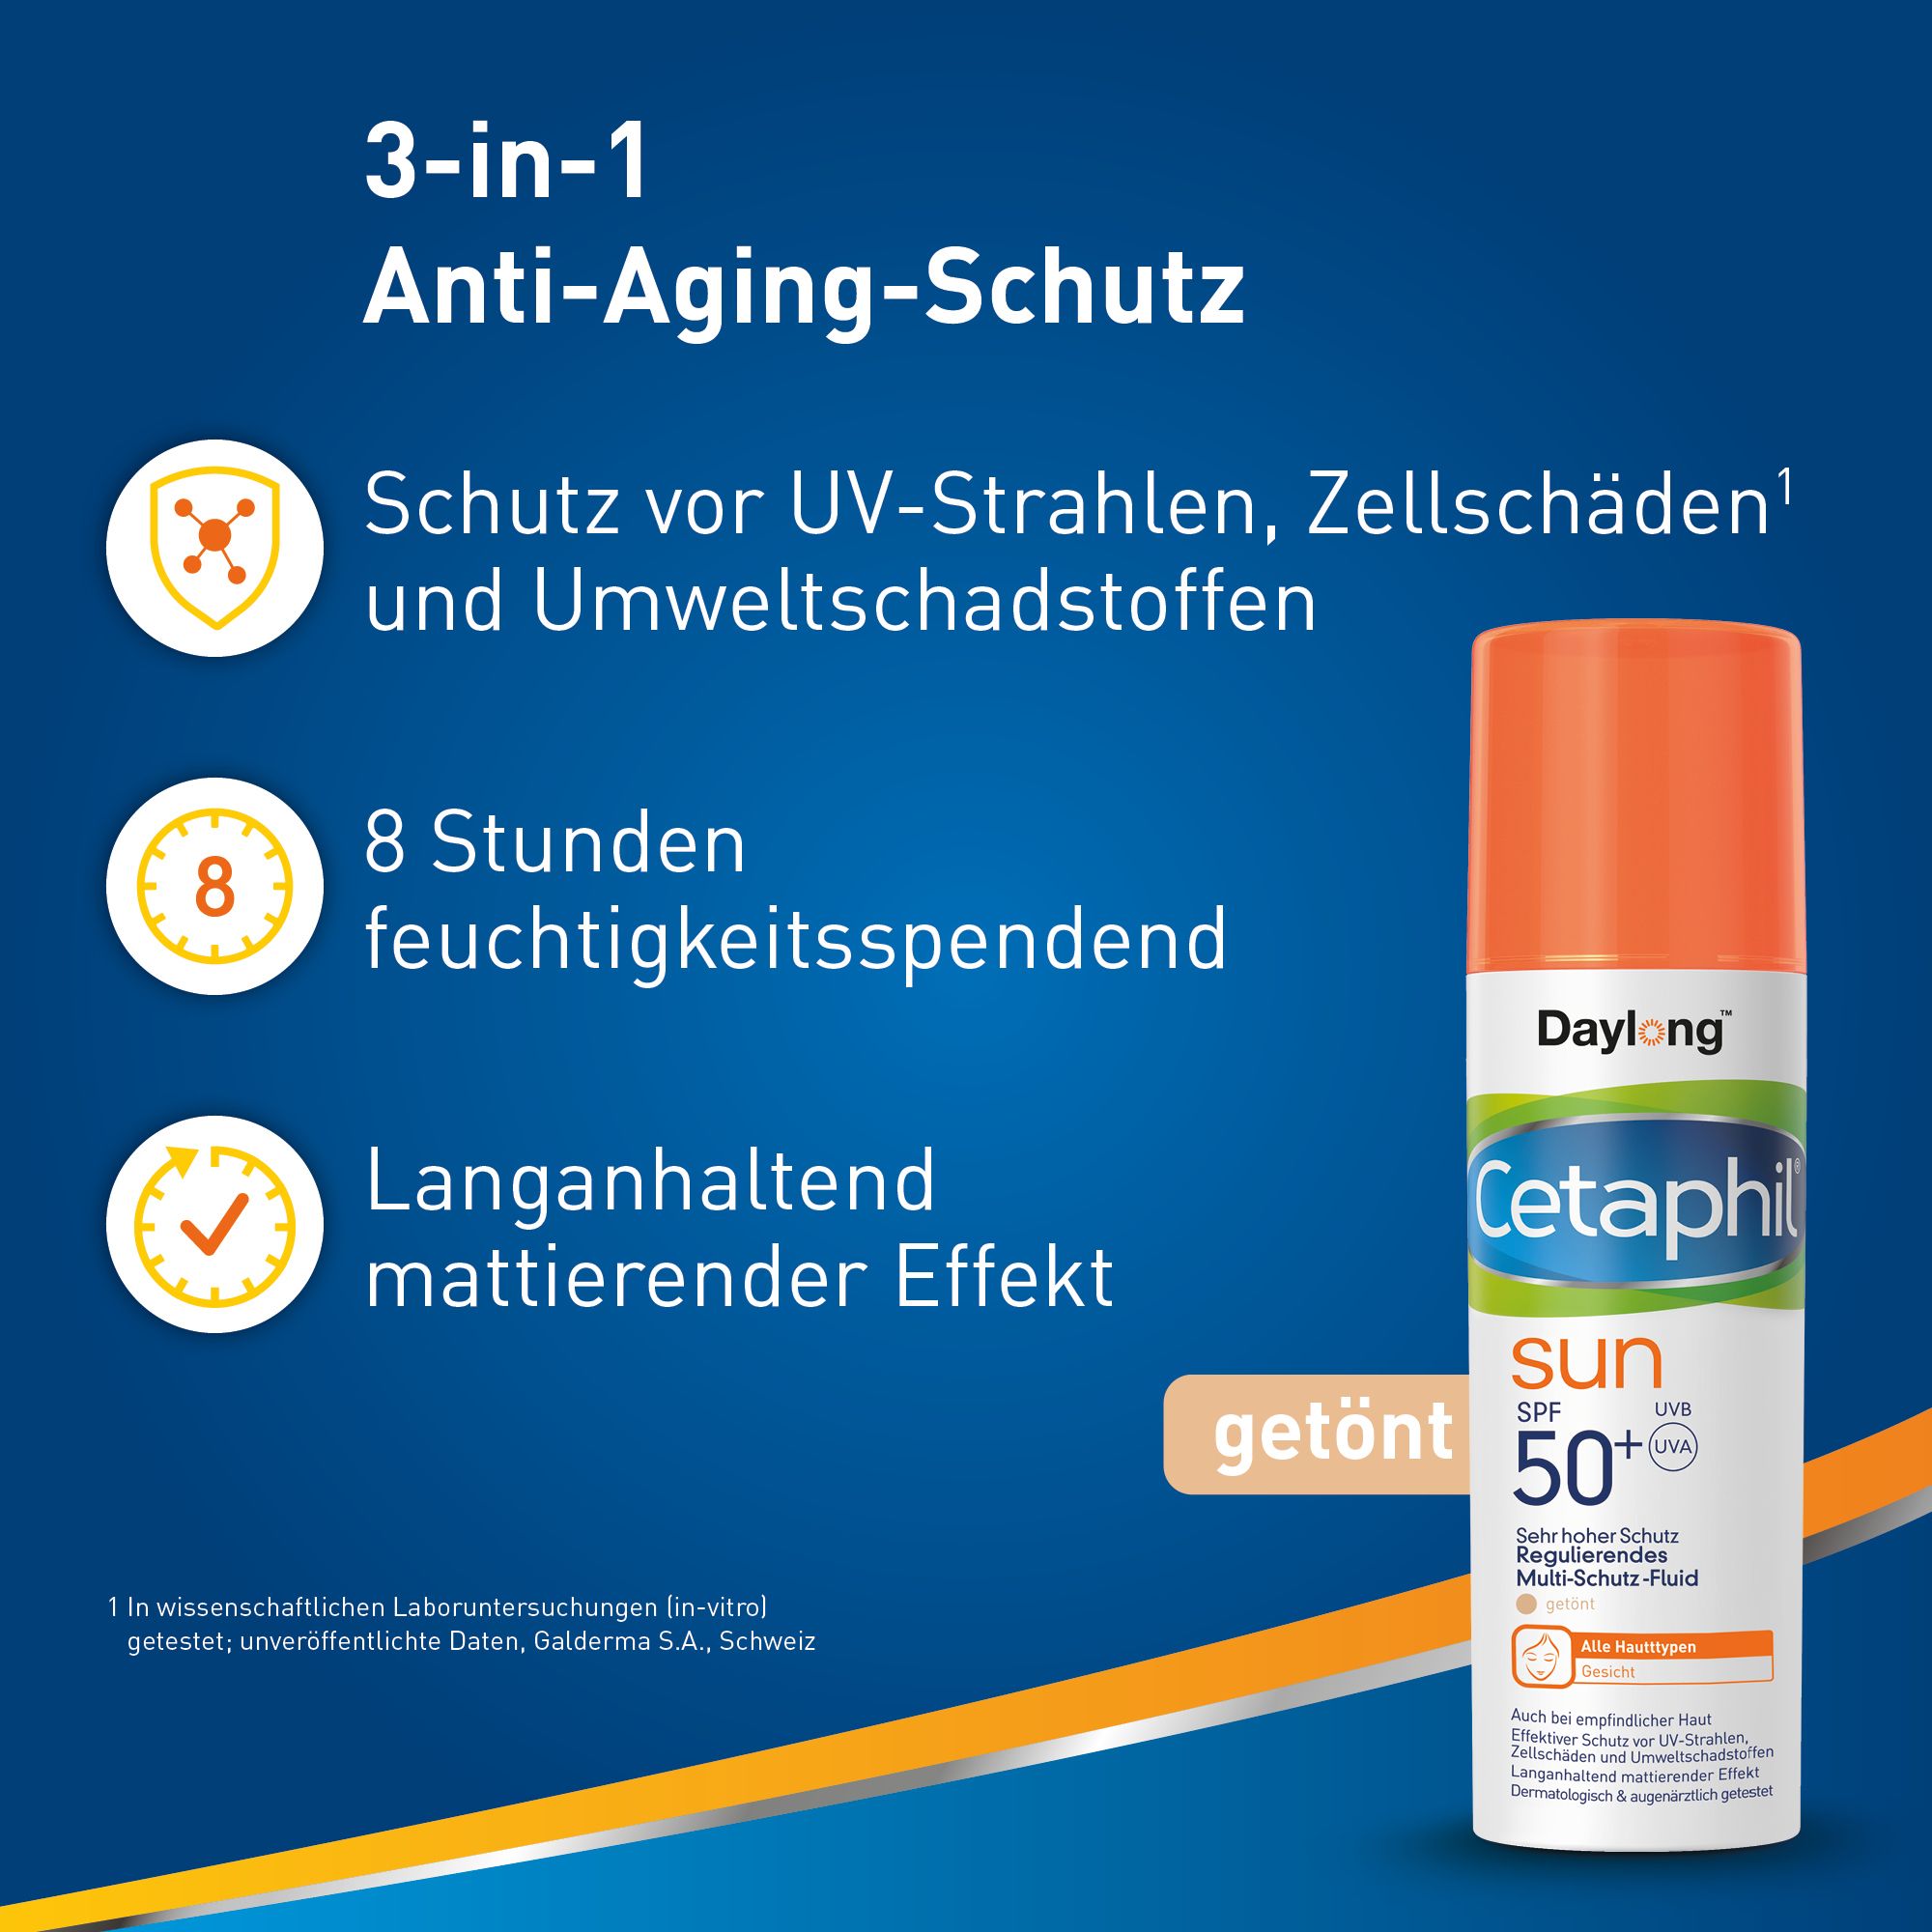 CETAPHIL SUN Regulierendes Multi-Schutz-Fluid SPF 50+ Getönter Anti-Aging-Schutz